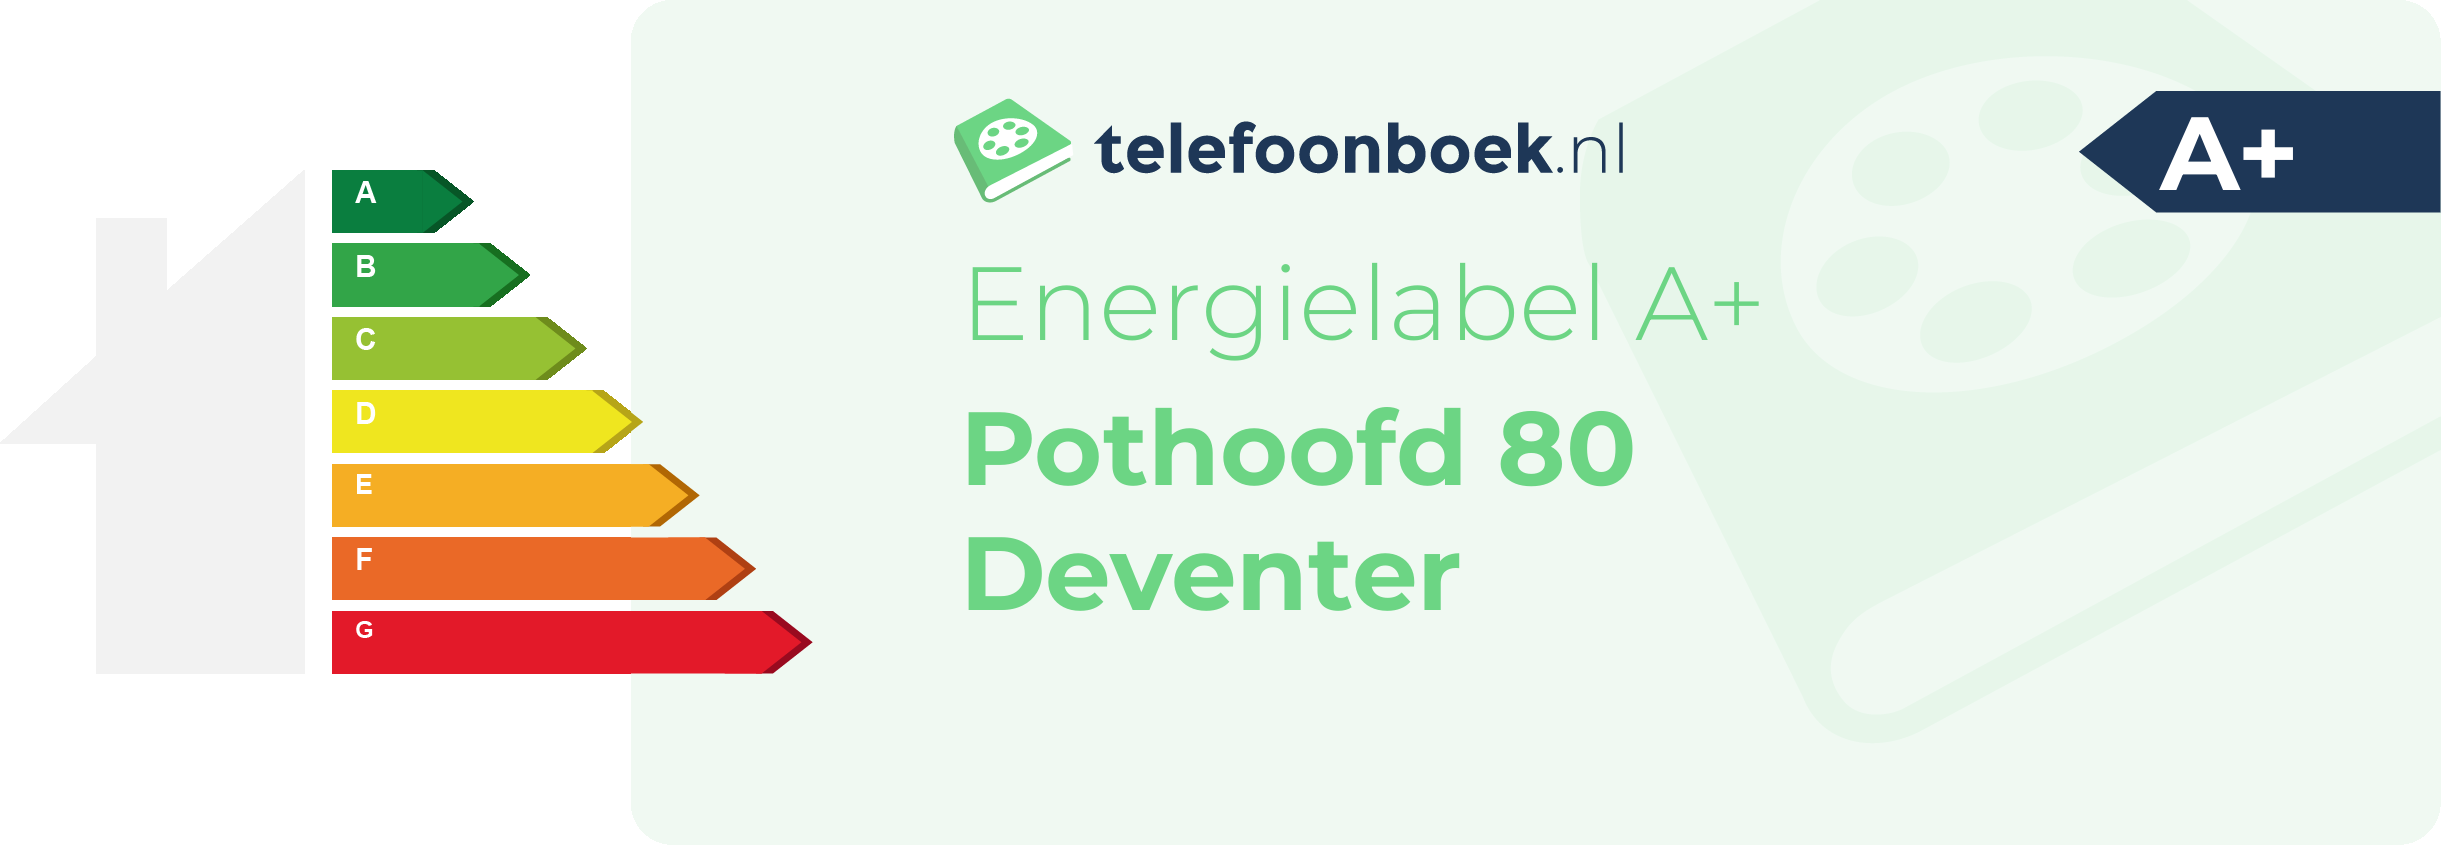 Energielabel Pothoofd 80 Deventer